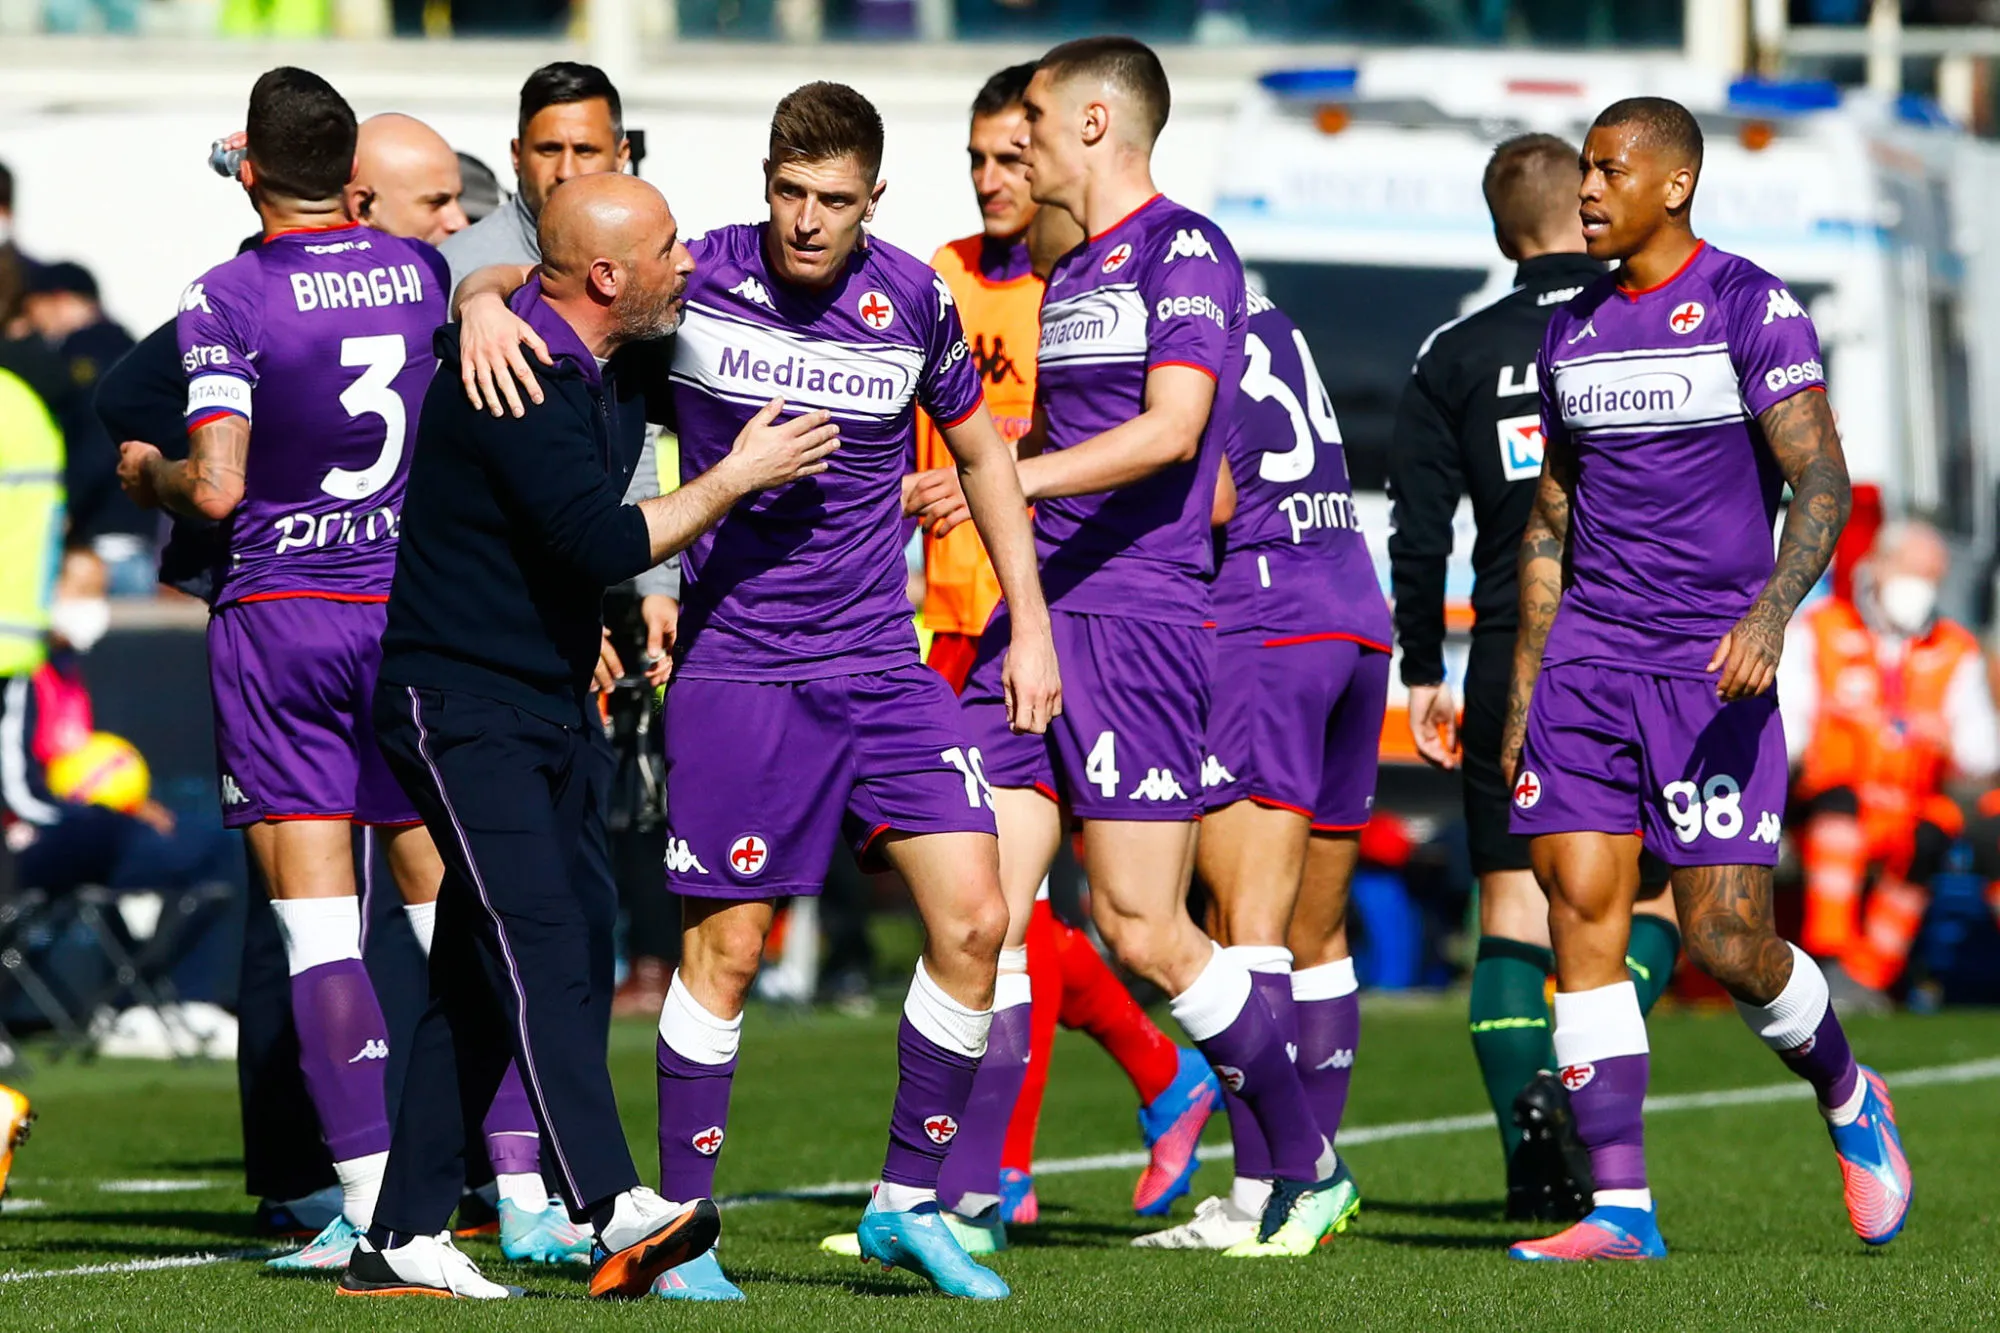 Pronostic Fiorentina Udinese : Analyse, cotes et prono du match de Serie A